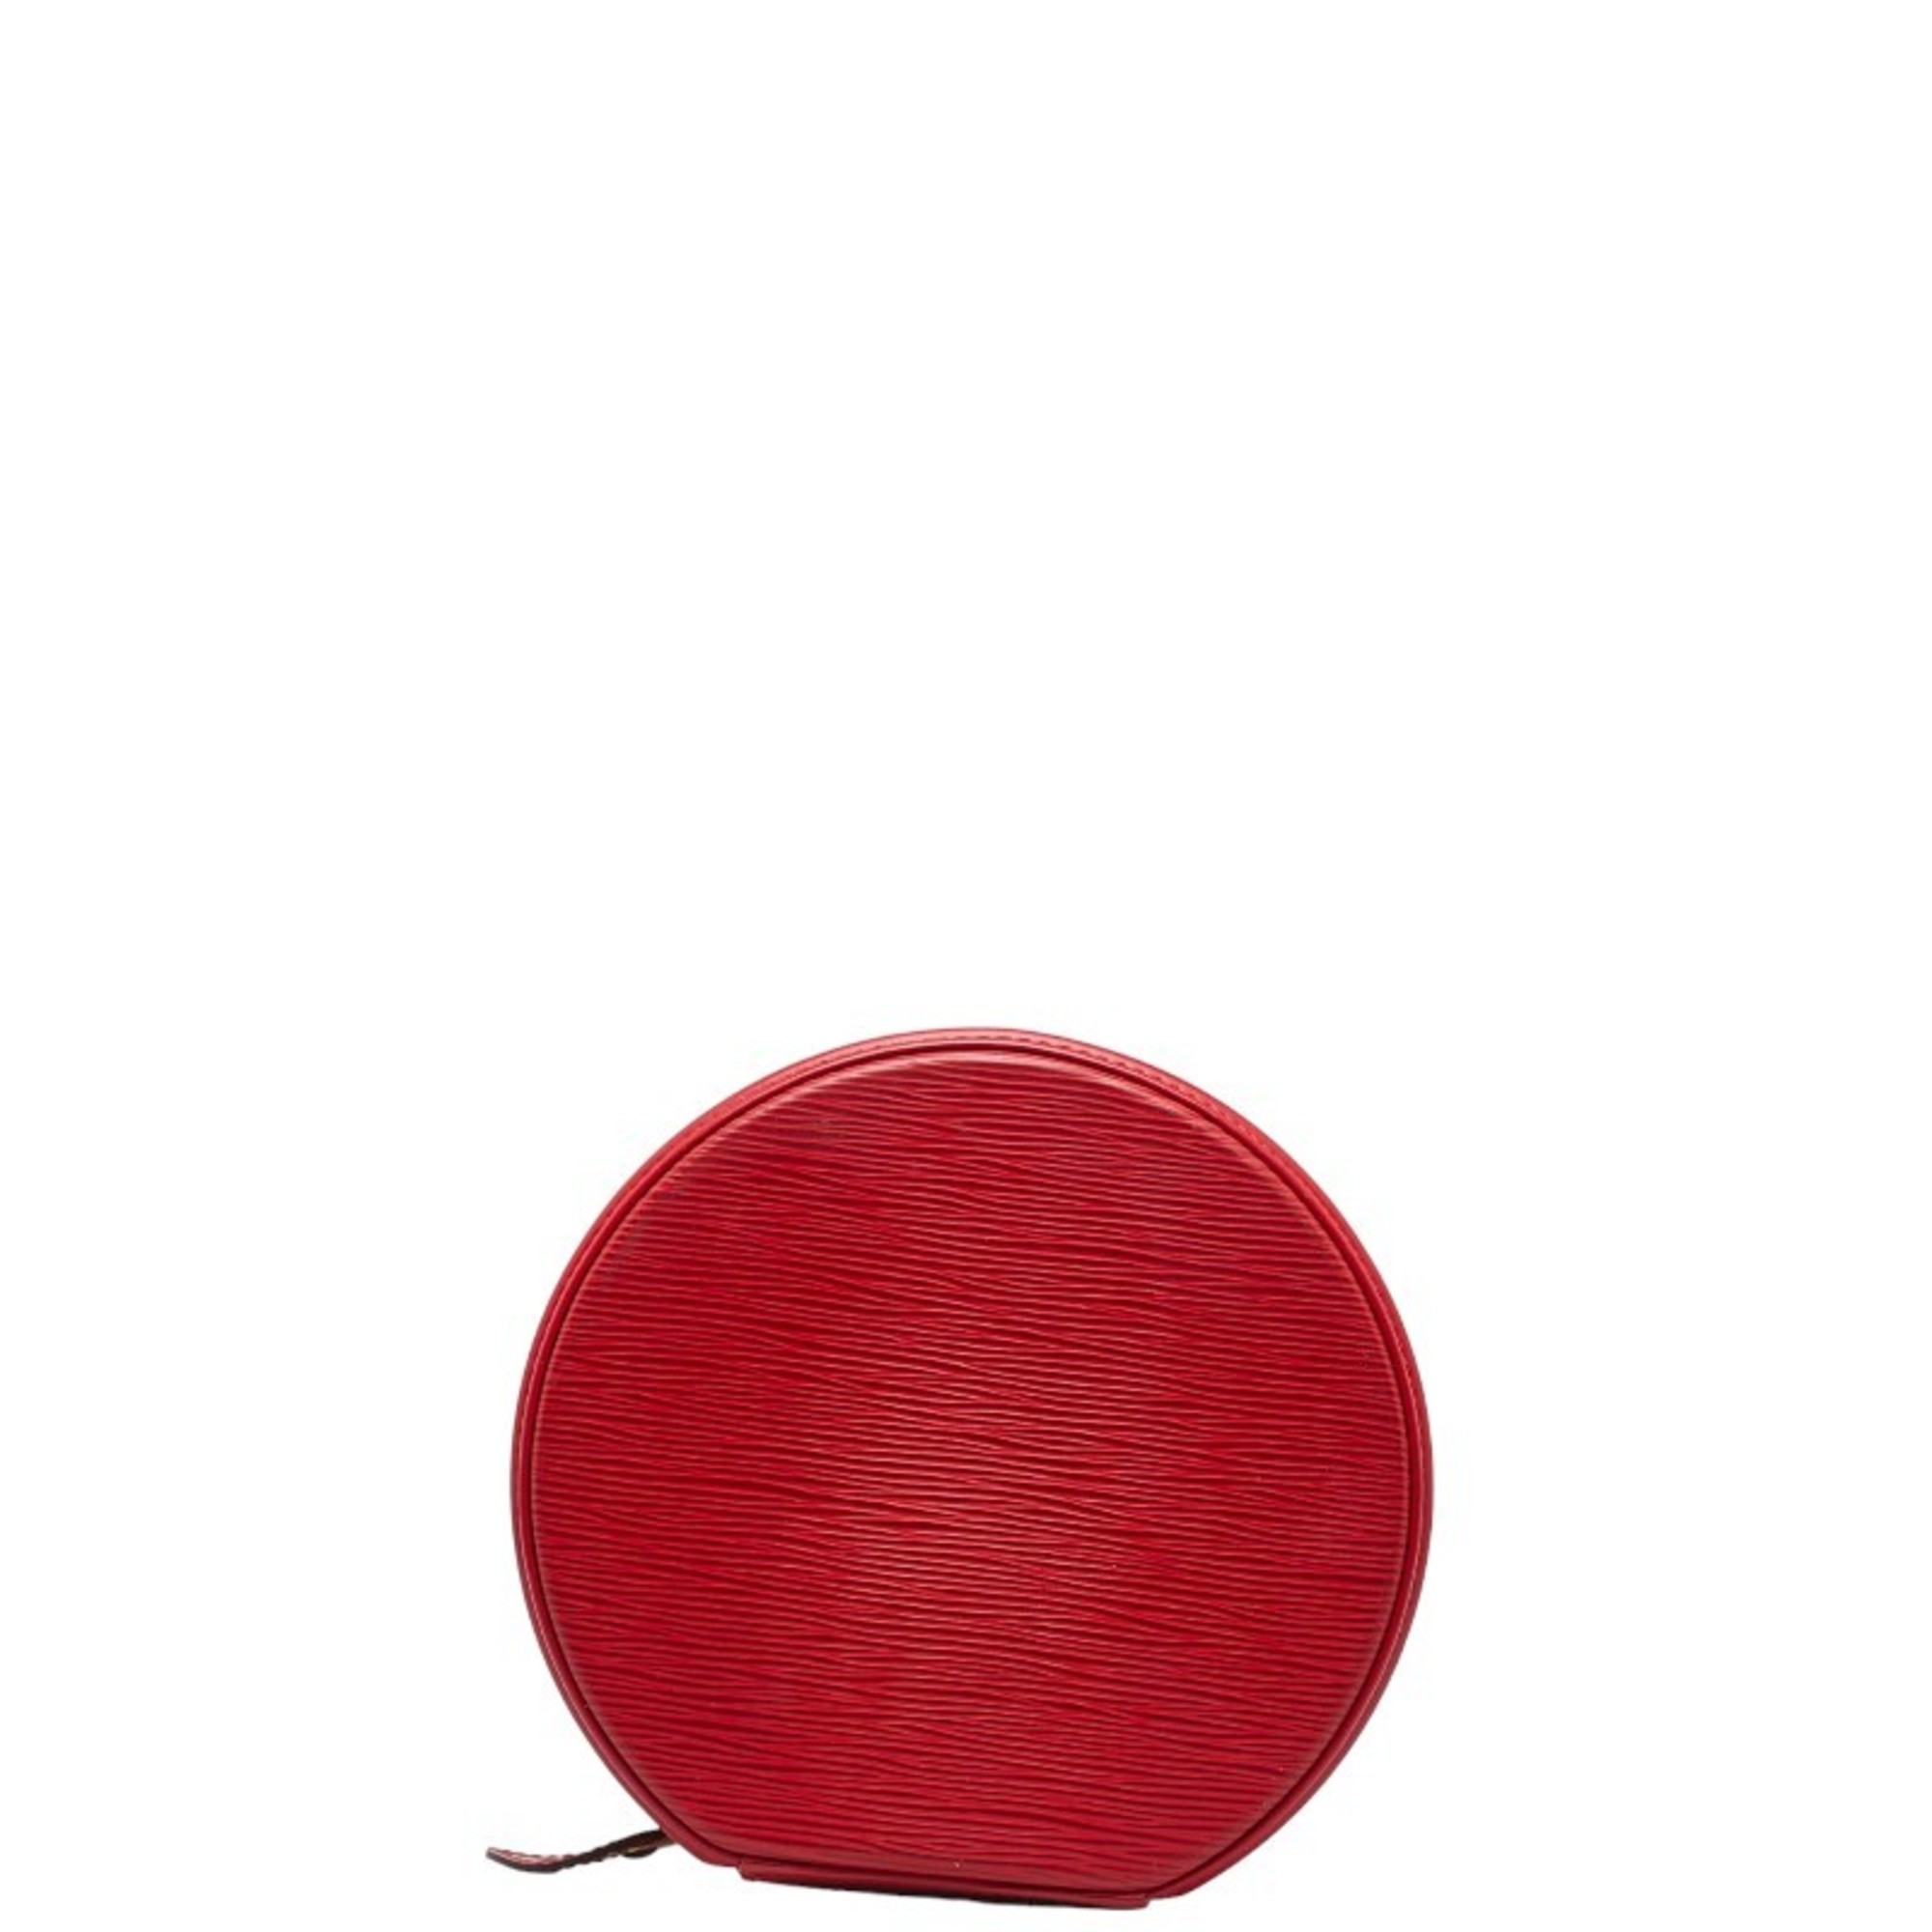 Louis Vuitton Epi Cannes Handbag Vanity Bag M48037 Castilian Red Leather Women's LOUIS VUITTON